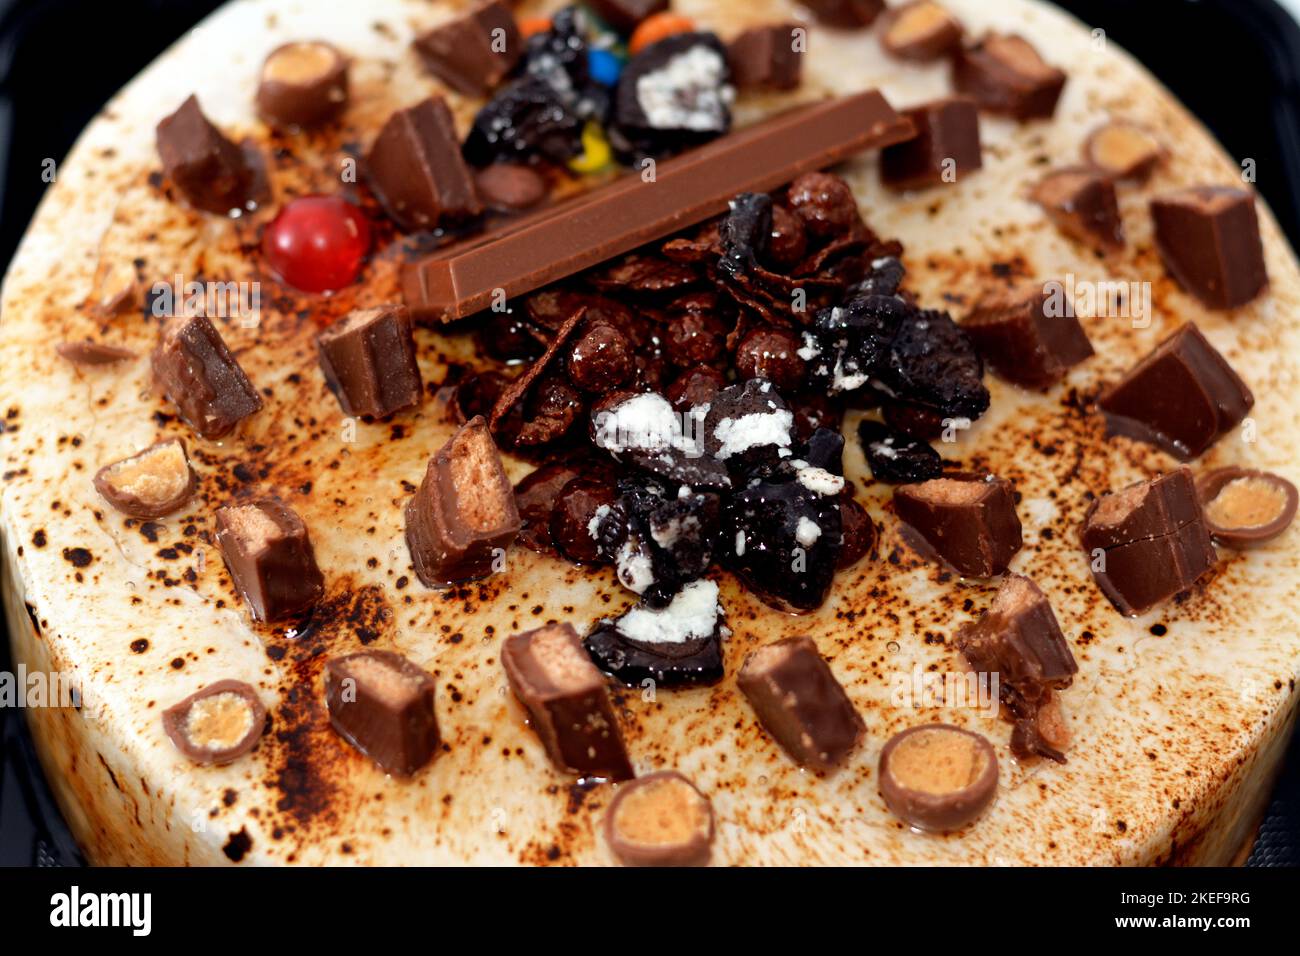 Torta festosa al cioccolato al caramello ricoperta di caramello e panna montata, farcita con crema alla vaniglia e noci, e decorata con diversi tipi di choc Foto Stock